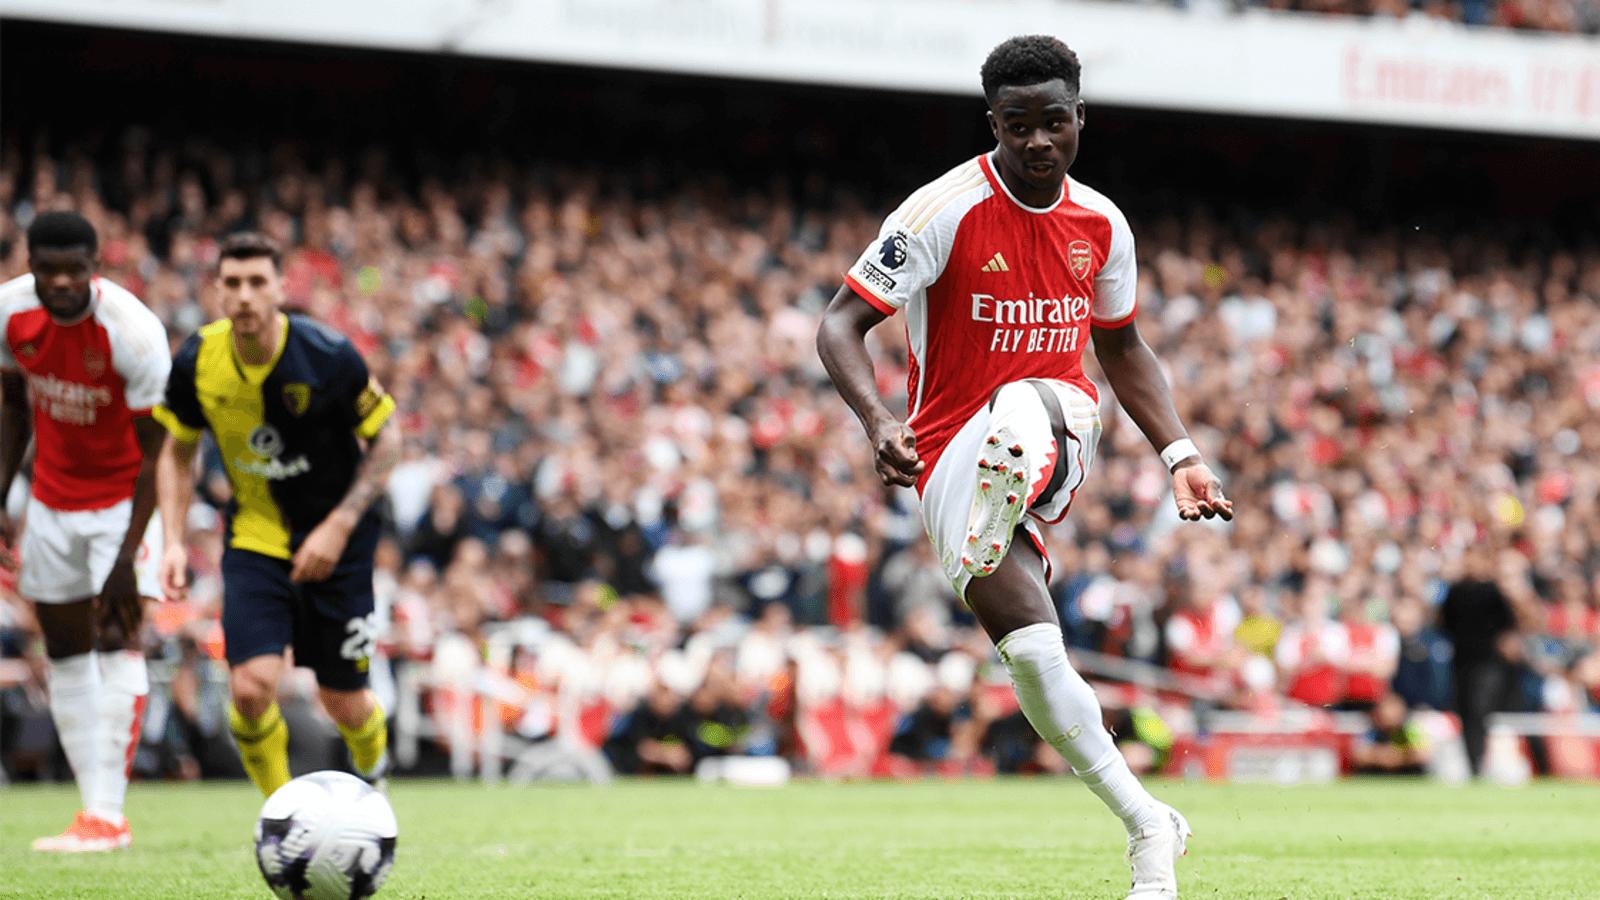 Arsenal 3 - 0 Bournemouth - Match Report | Arsenal